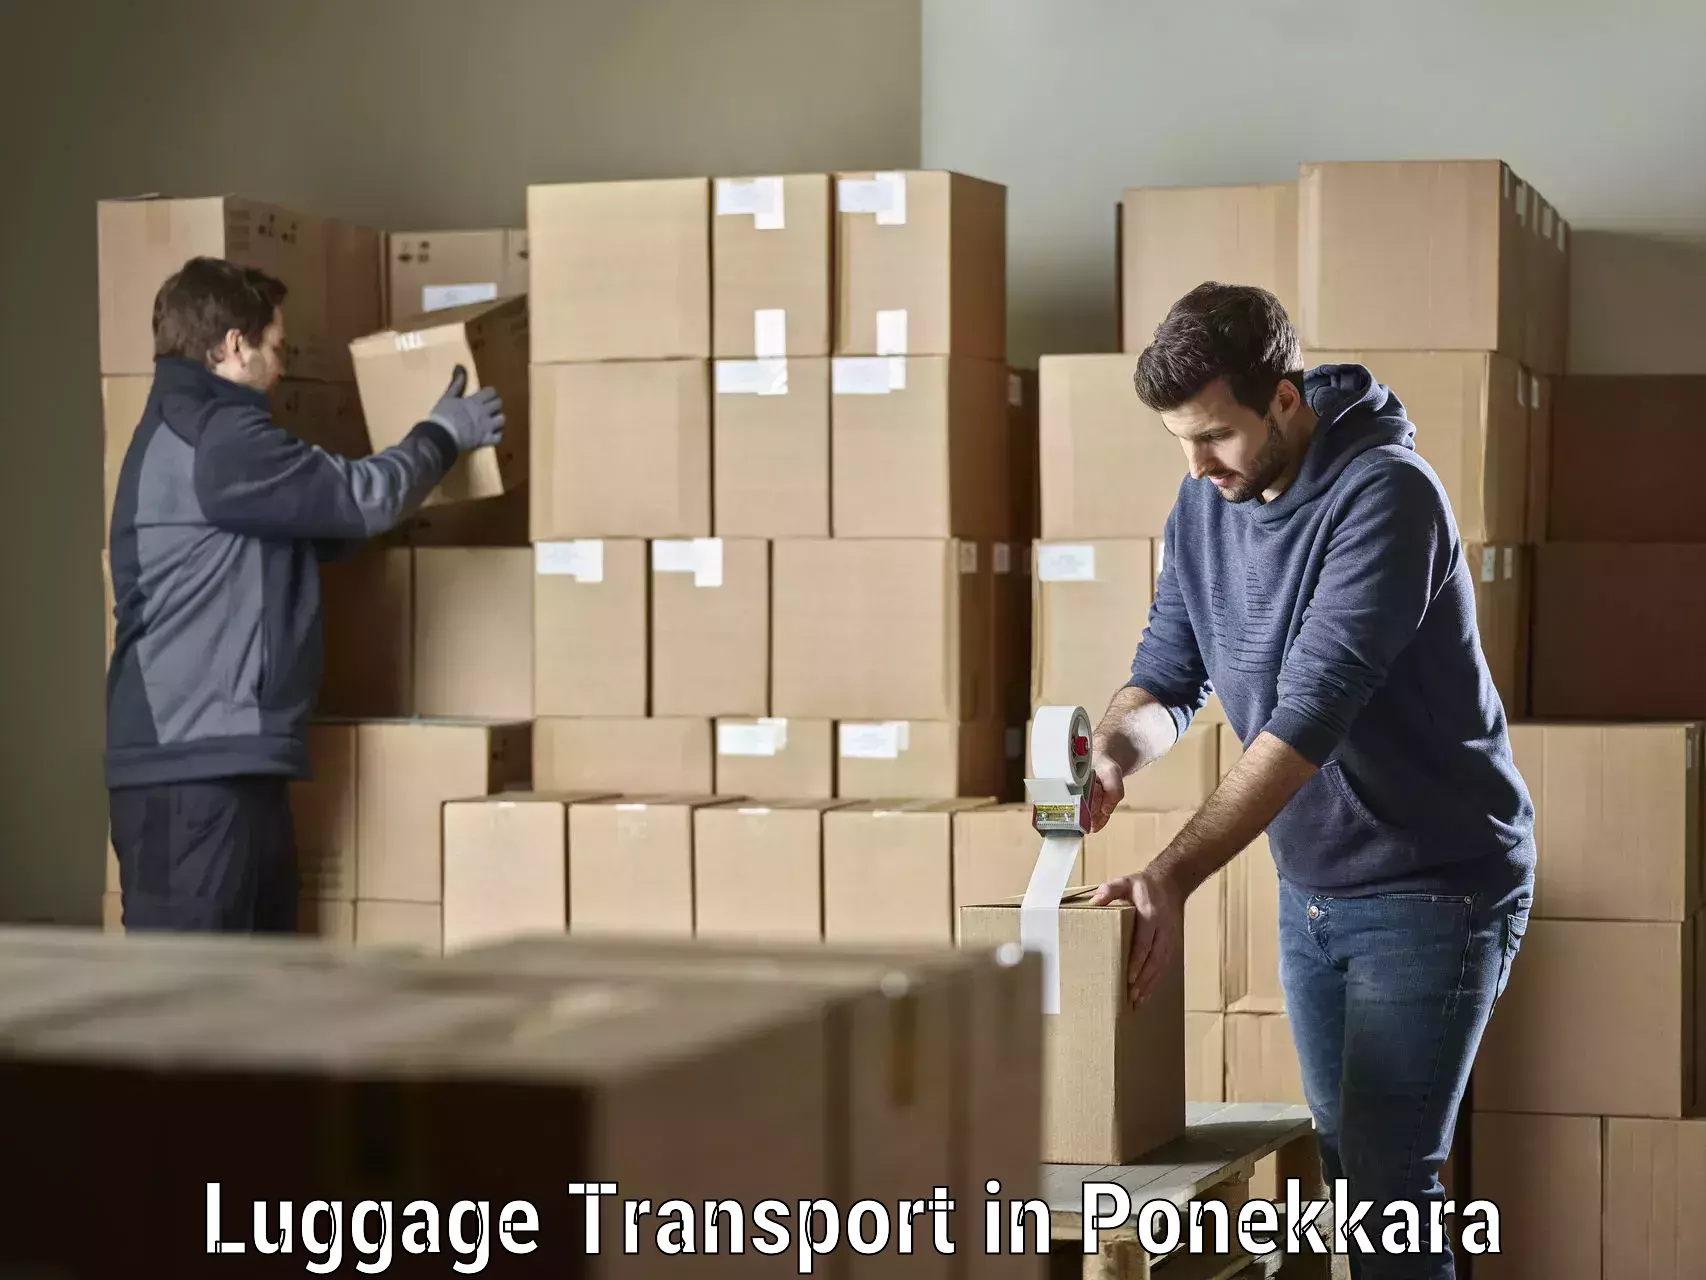 Baggage transport logistics in Ponekkara